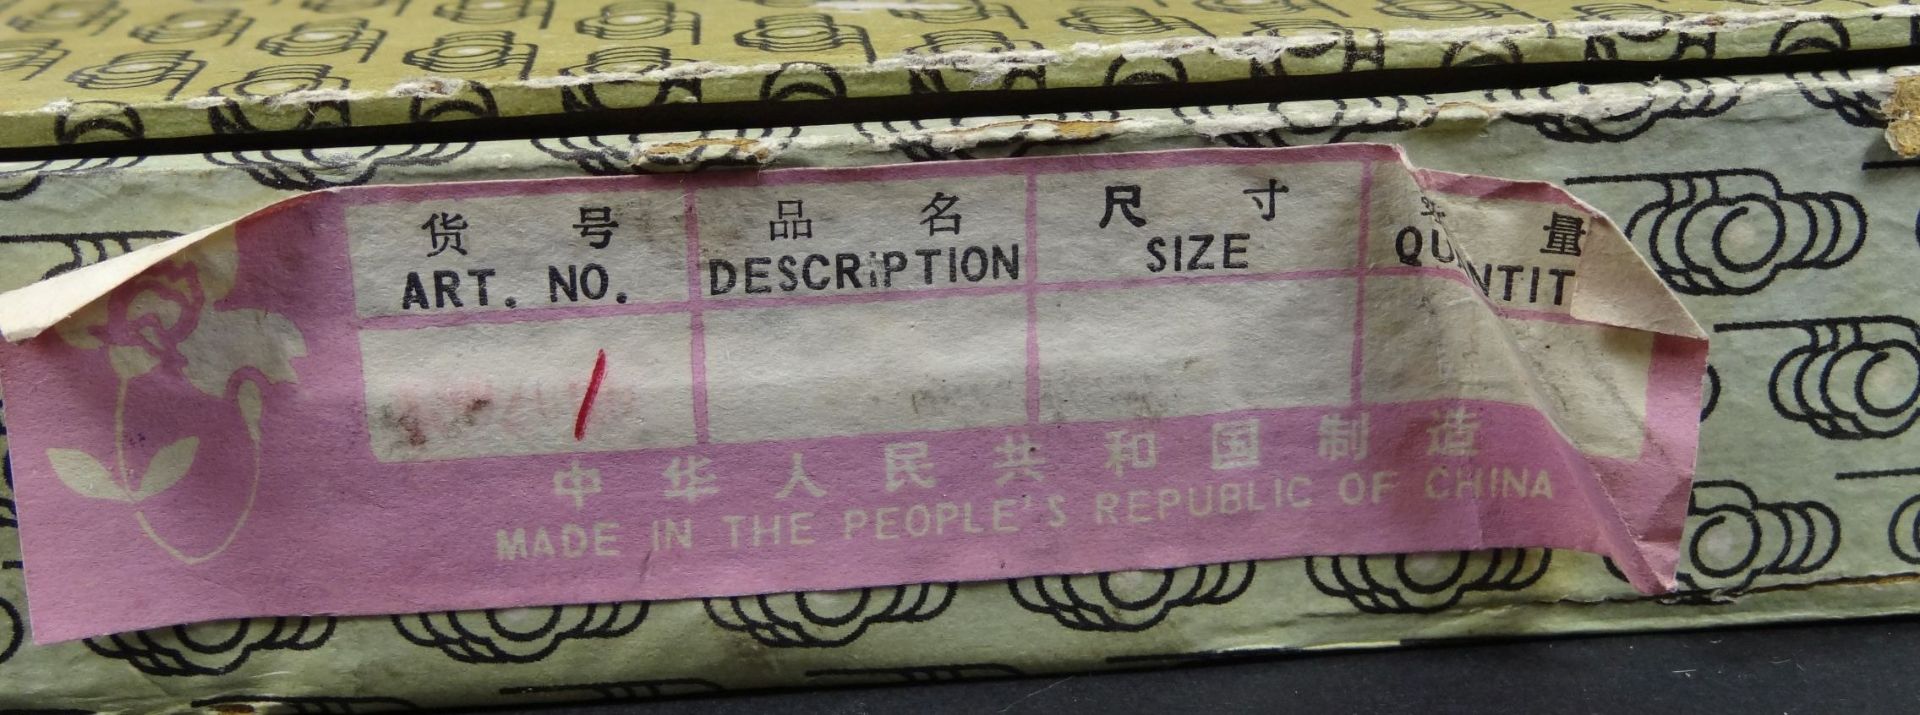 Schachtel mit 6 Emaille-Snuffbottles mit Holzstand, China, neuwertig, H-mit Stand 6,5 cm - Bild 3 aus 7